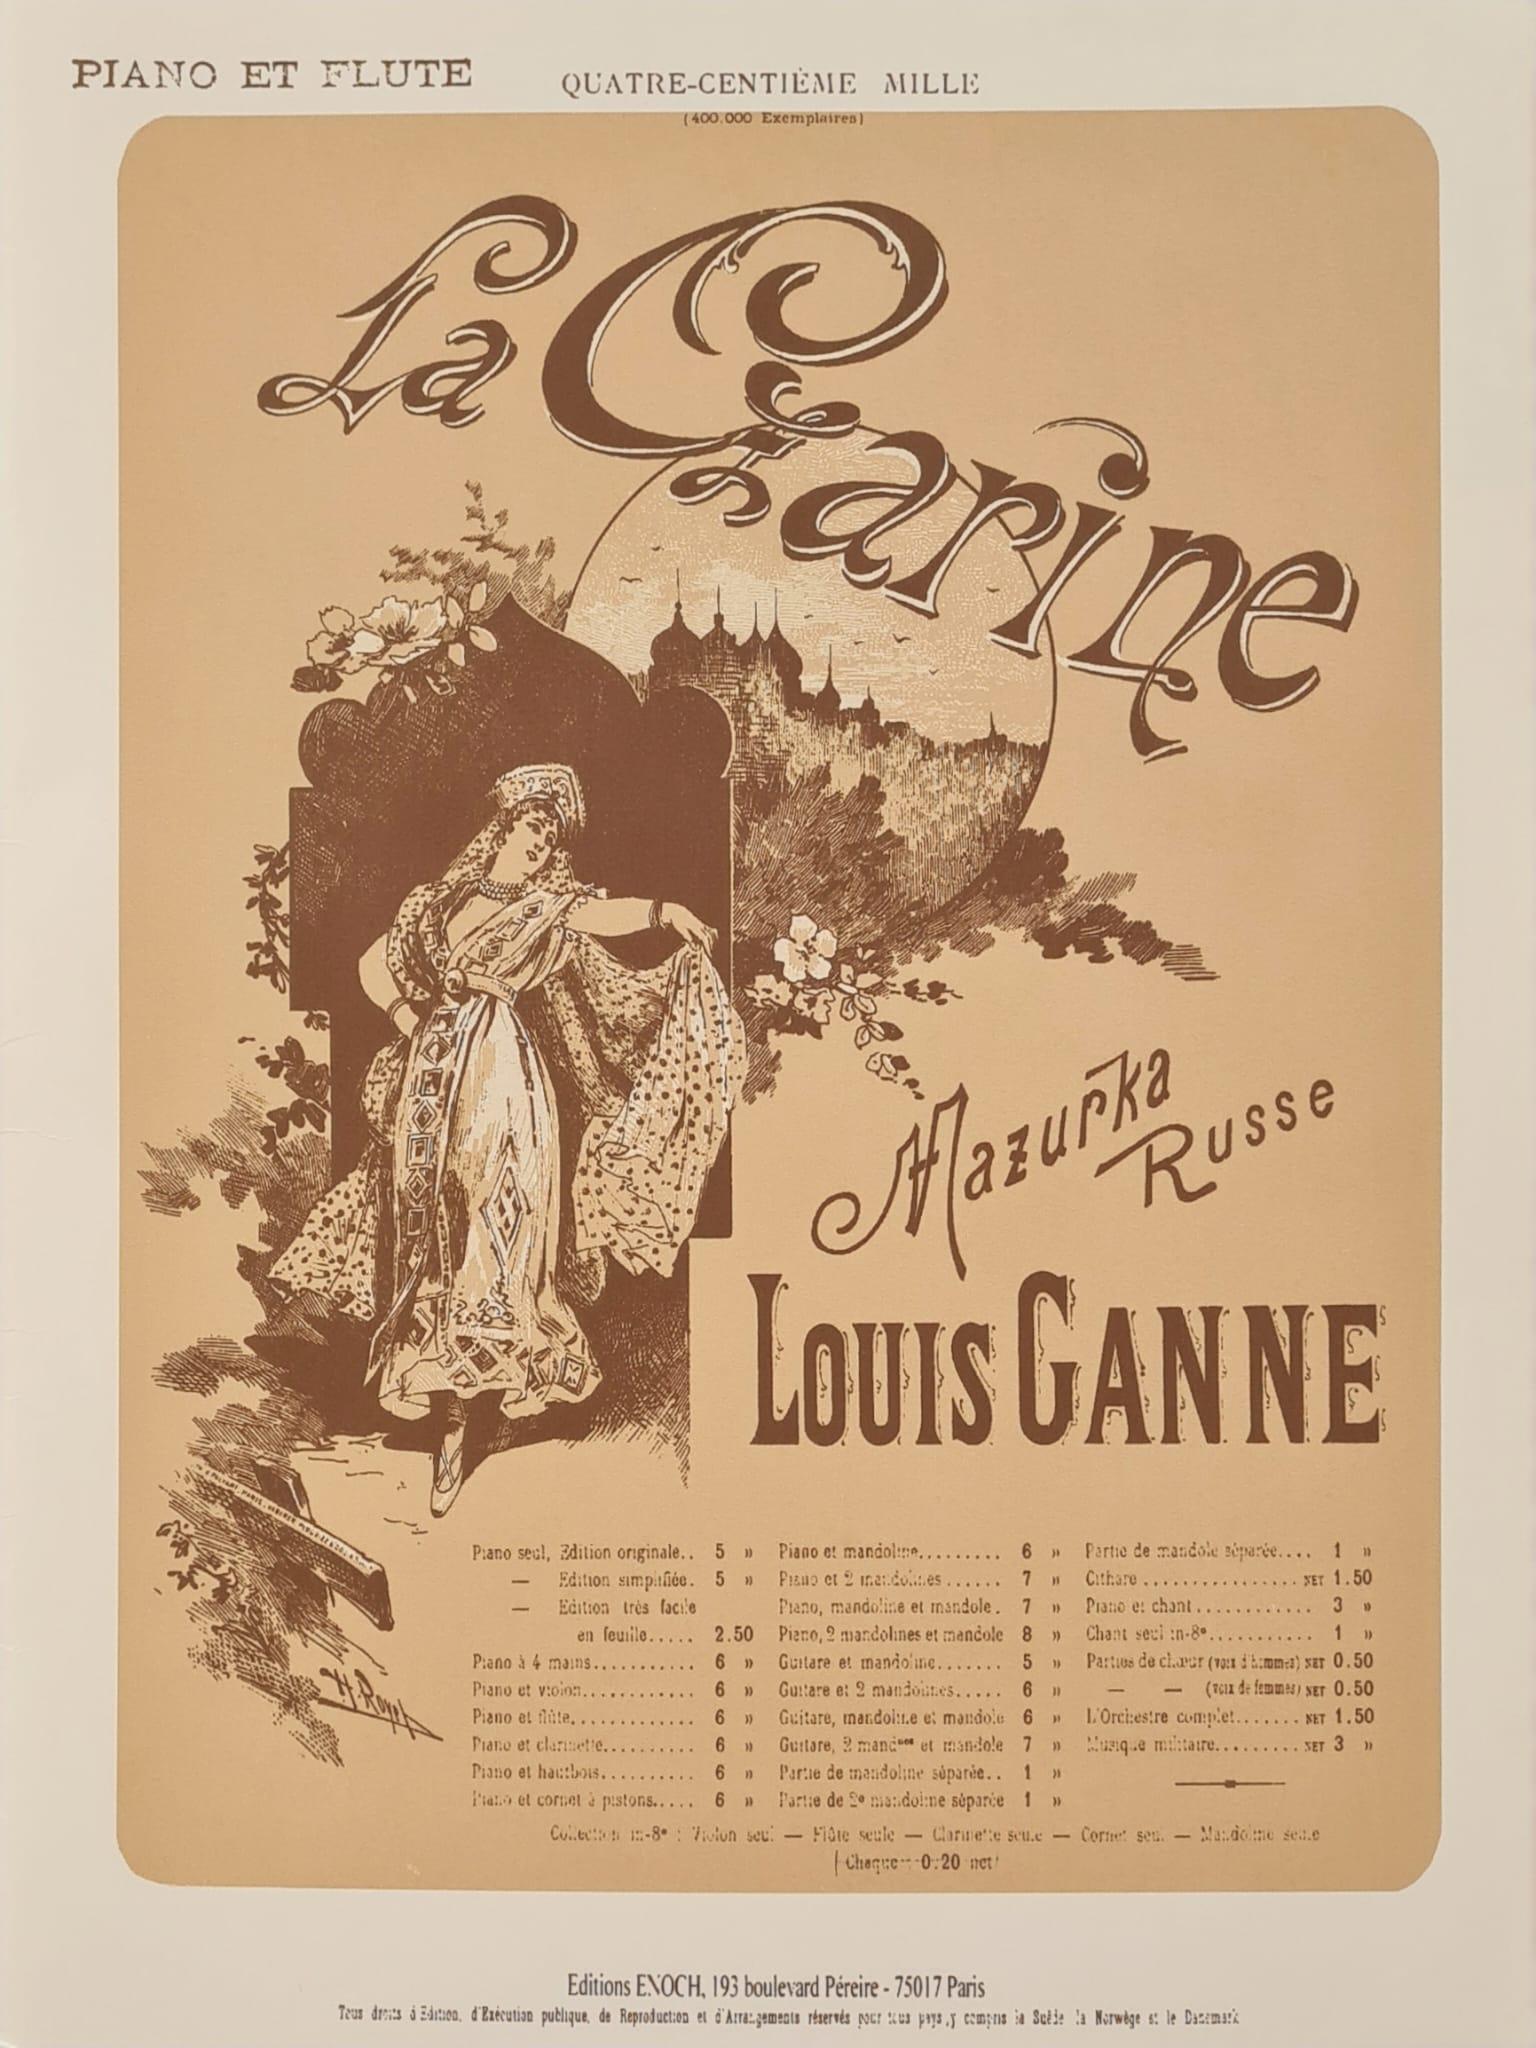 La Czarine, Mazurka russe, Louis GANNE | Suono Flauti